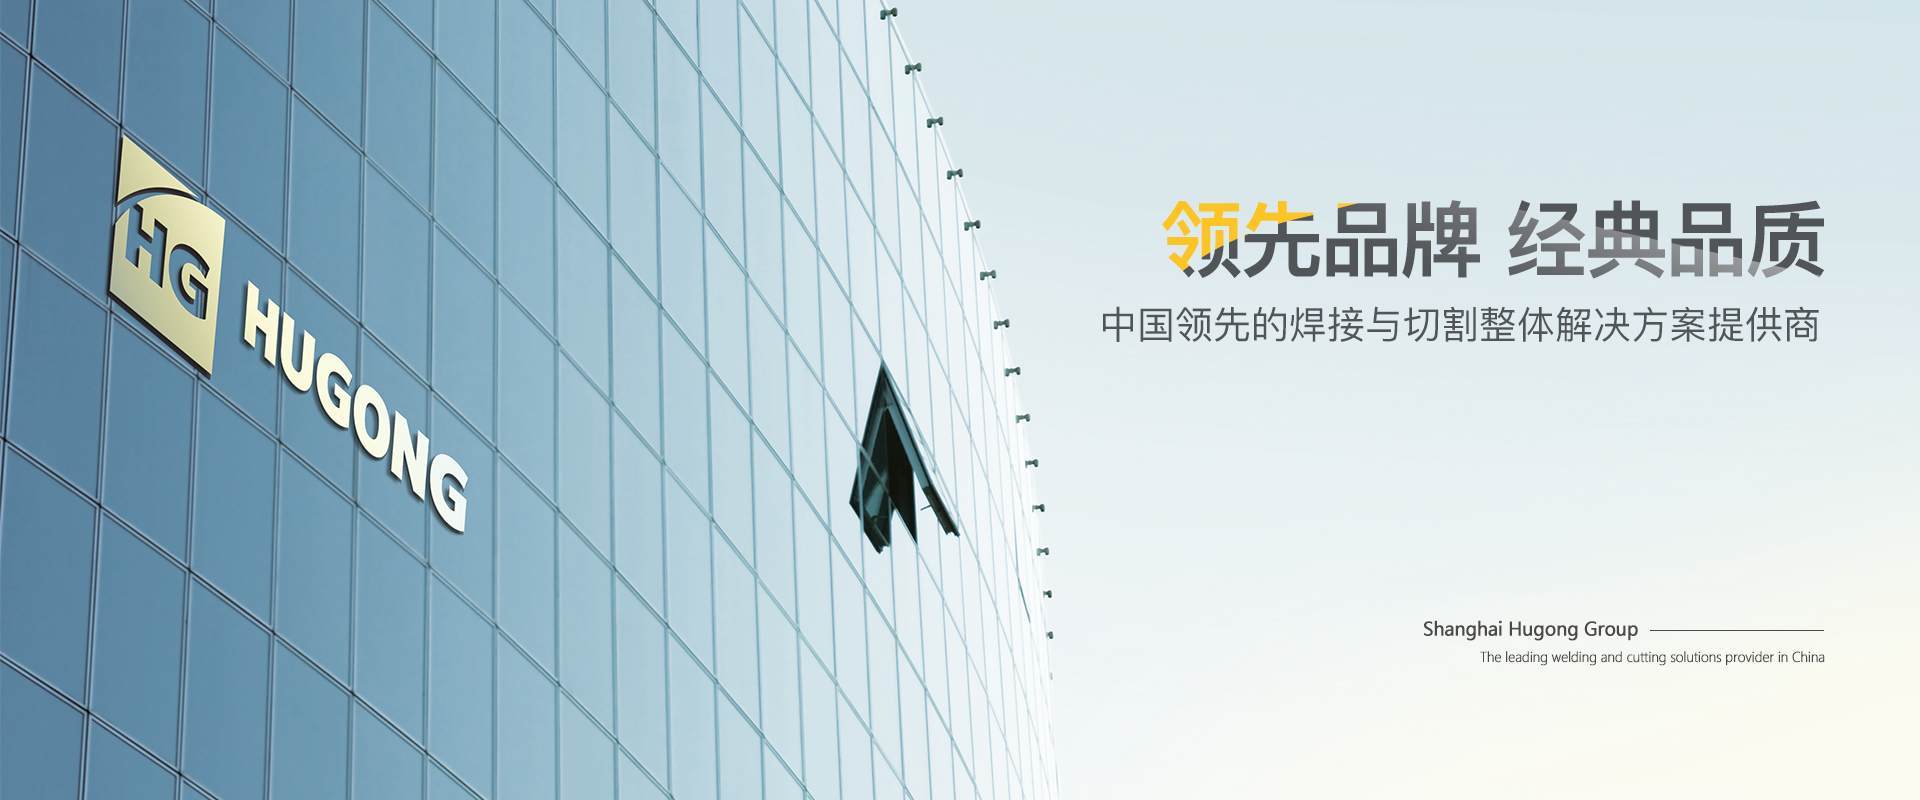 det365在线登录-中国领先的焊接与切割整体解决方案提供商